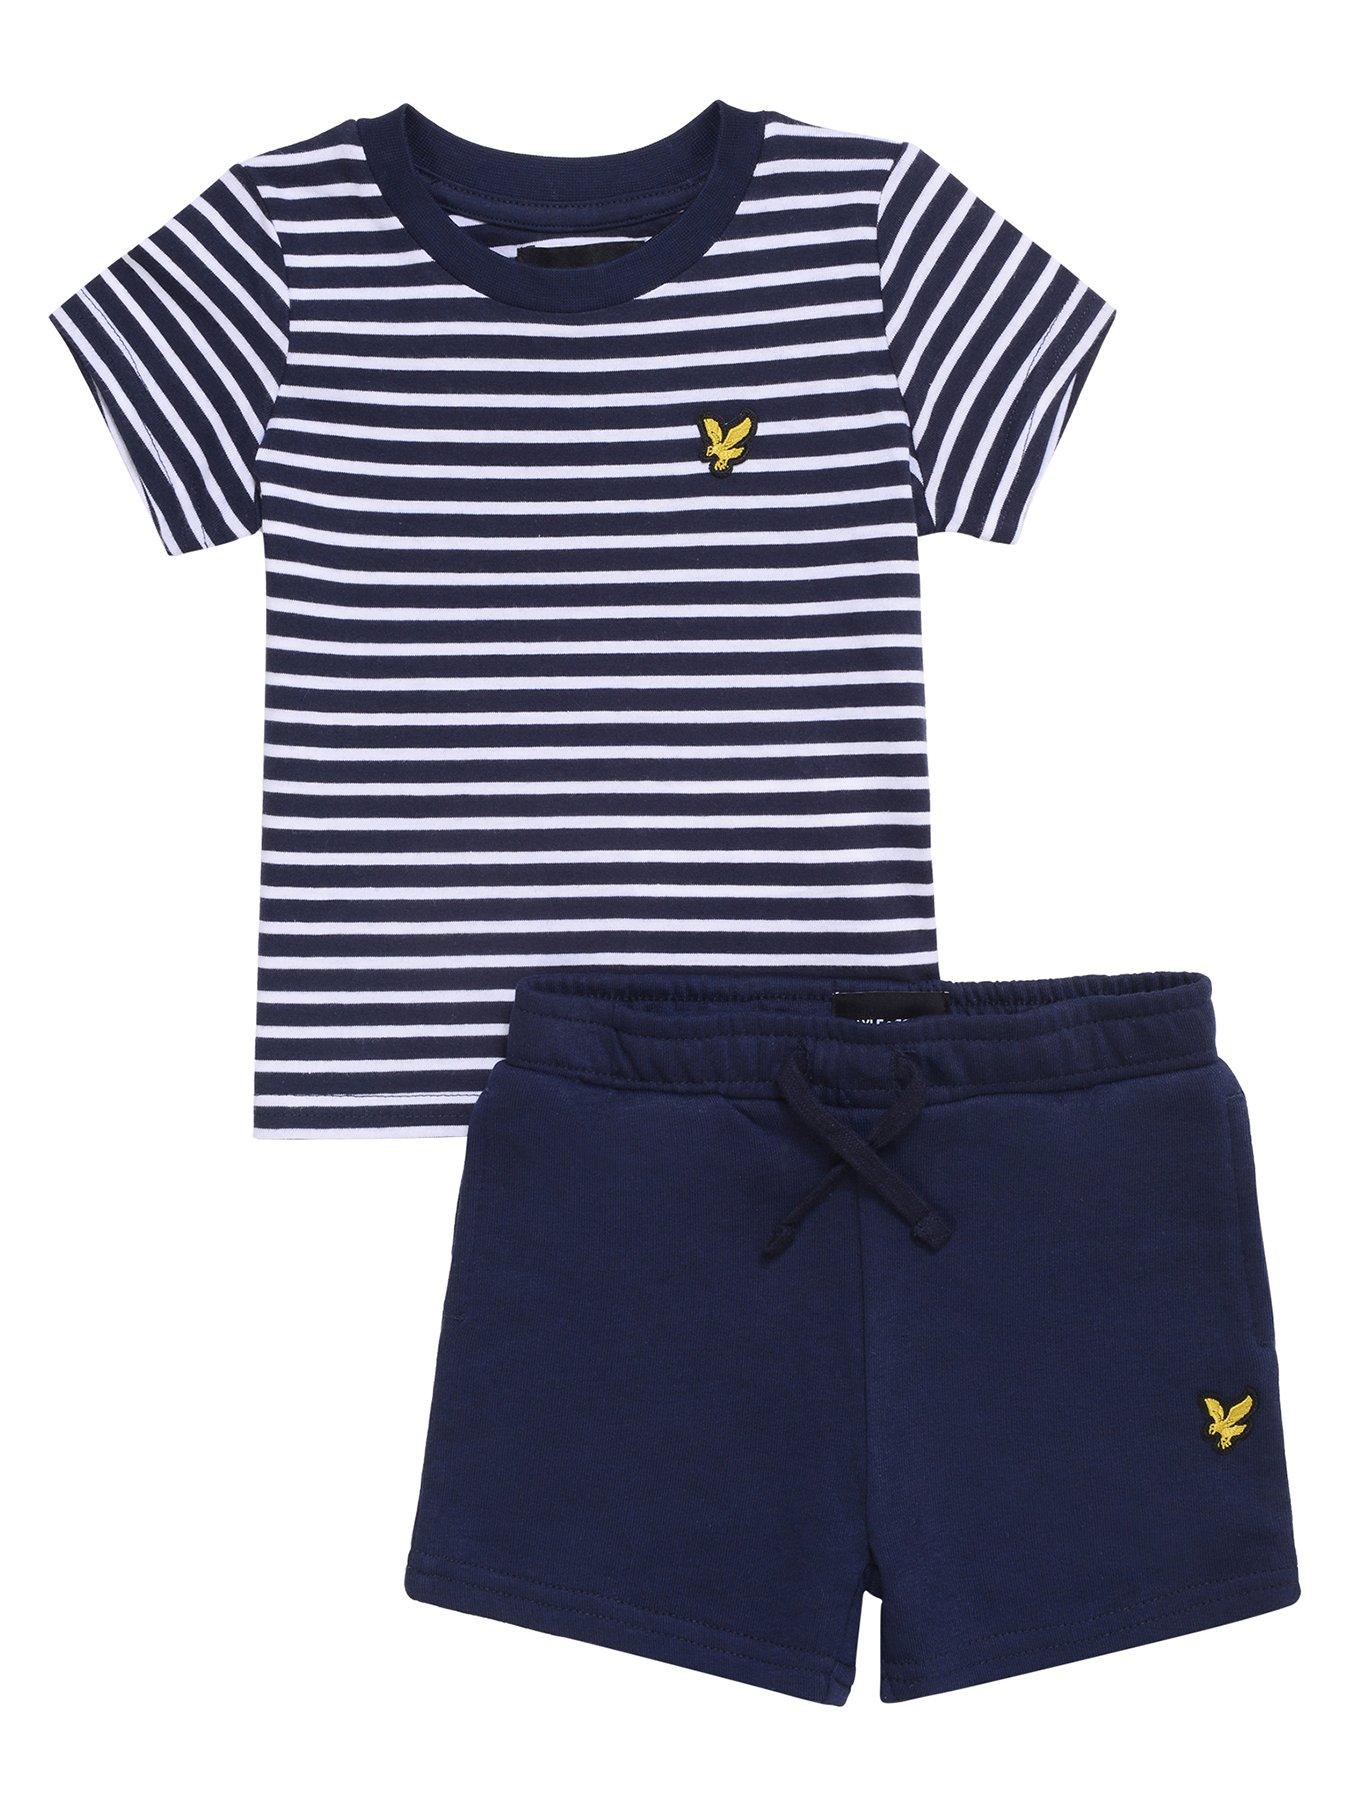 Kids Toddler Boys Breton Stripe T-shirt & Short Set - Navy Blazer